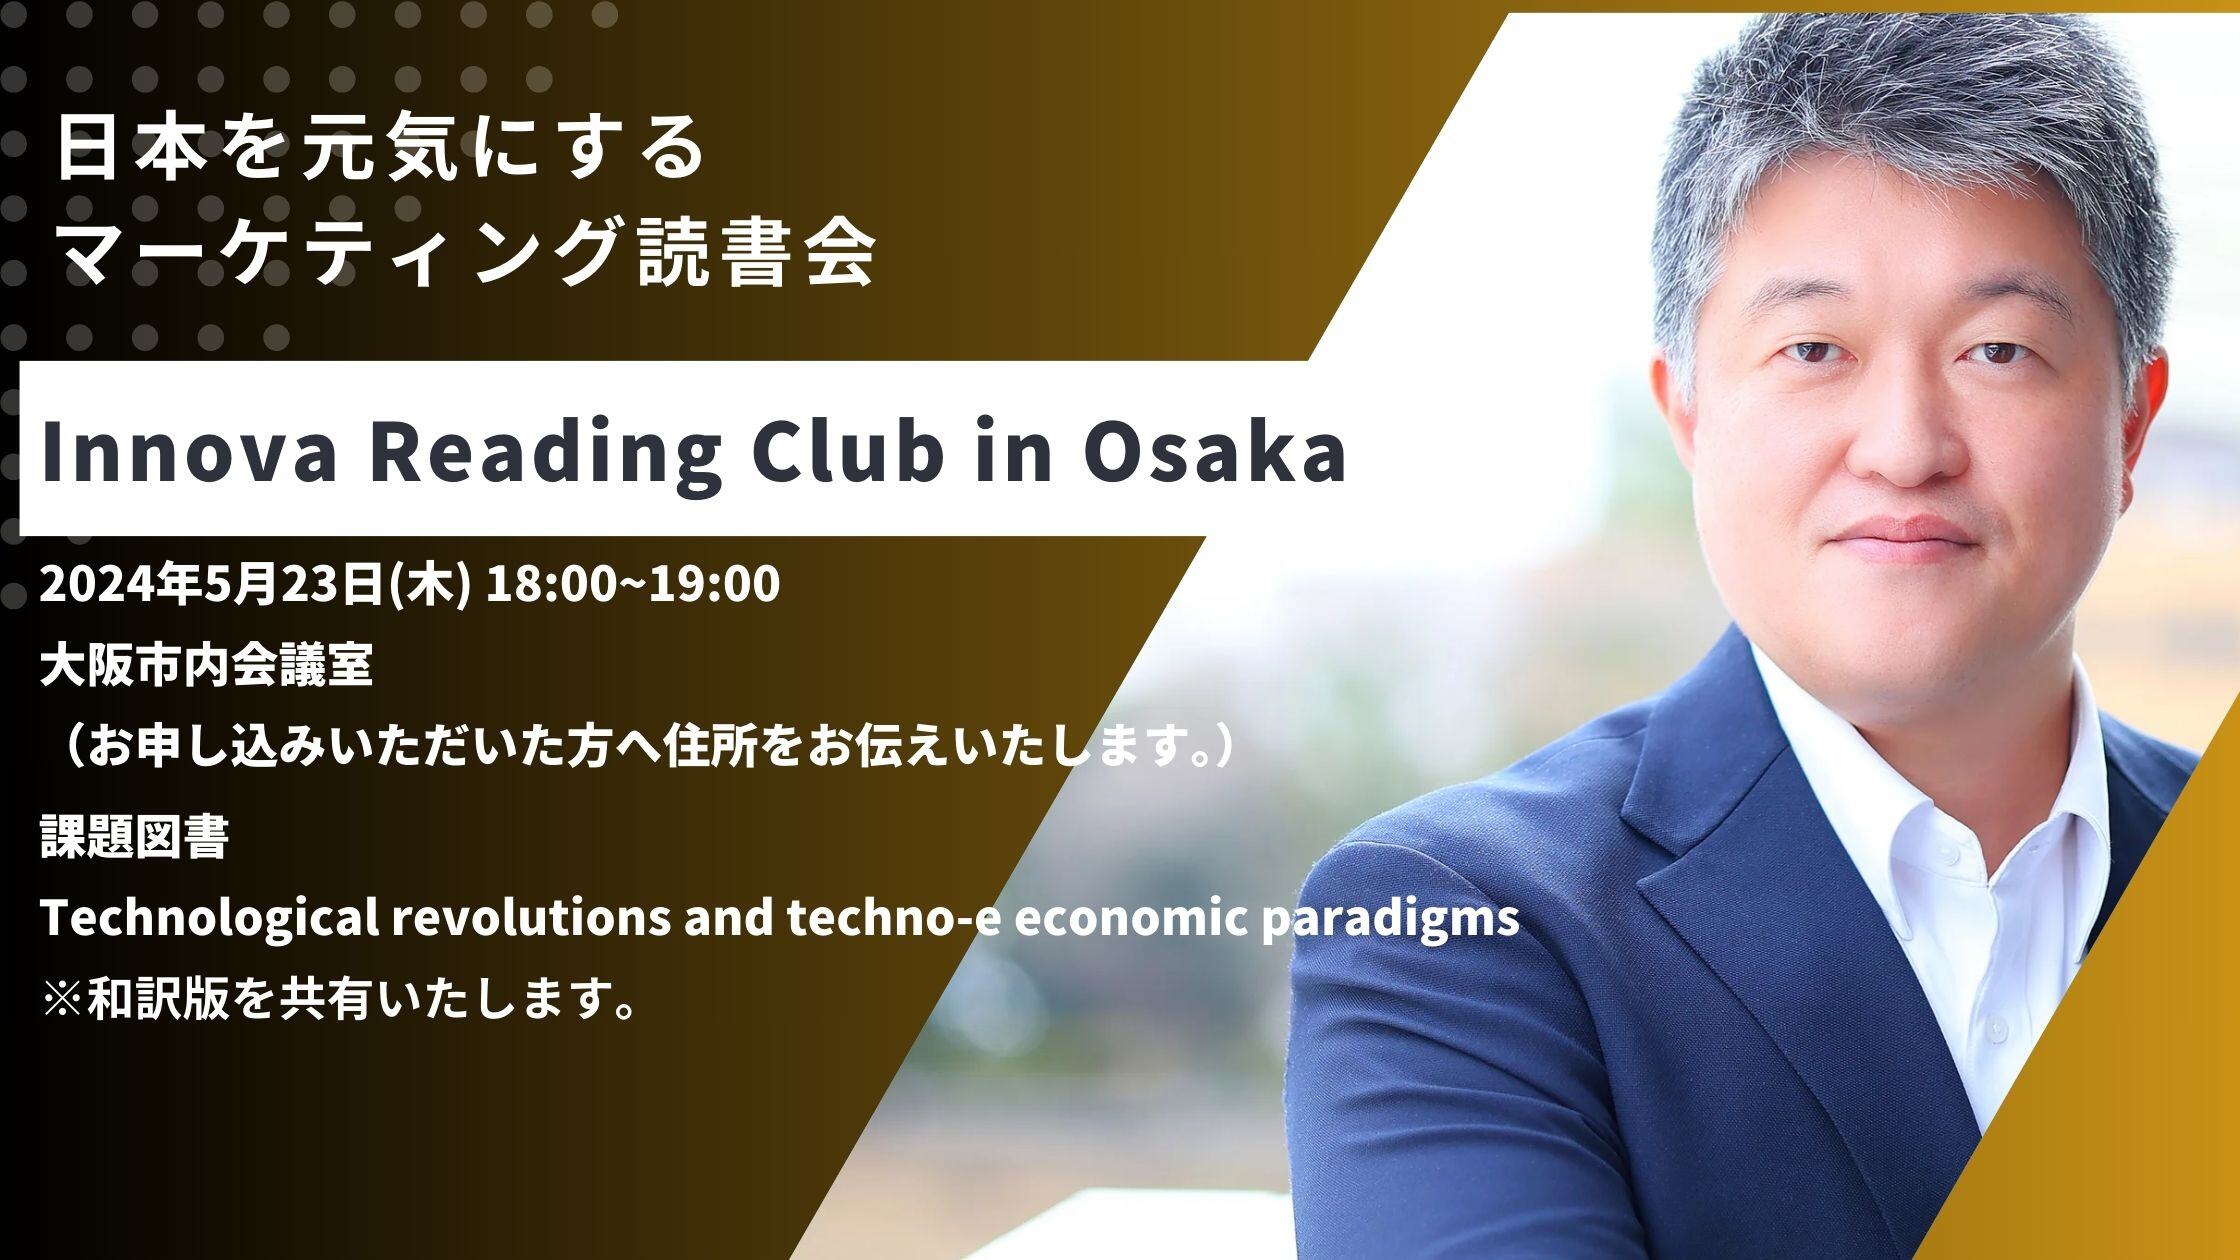 2405 Innova Reading Club Osaka